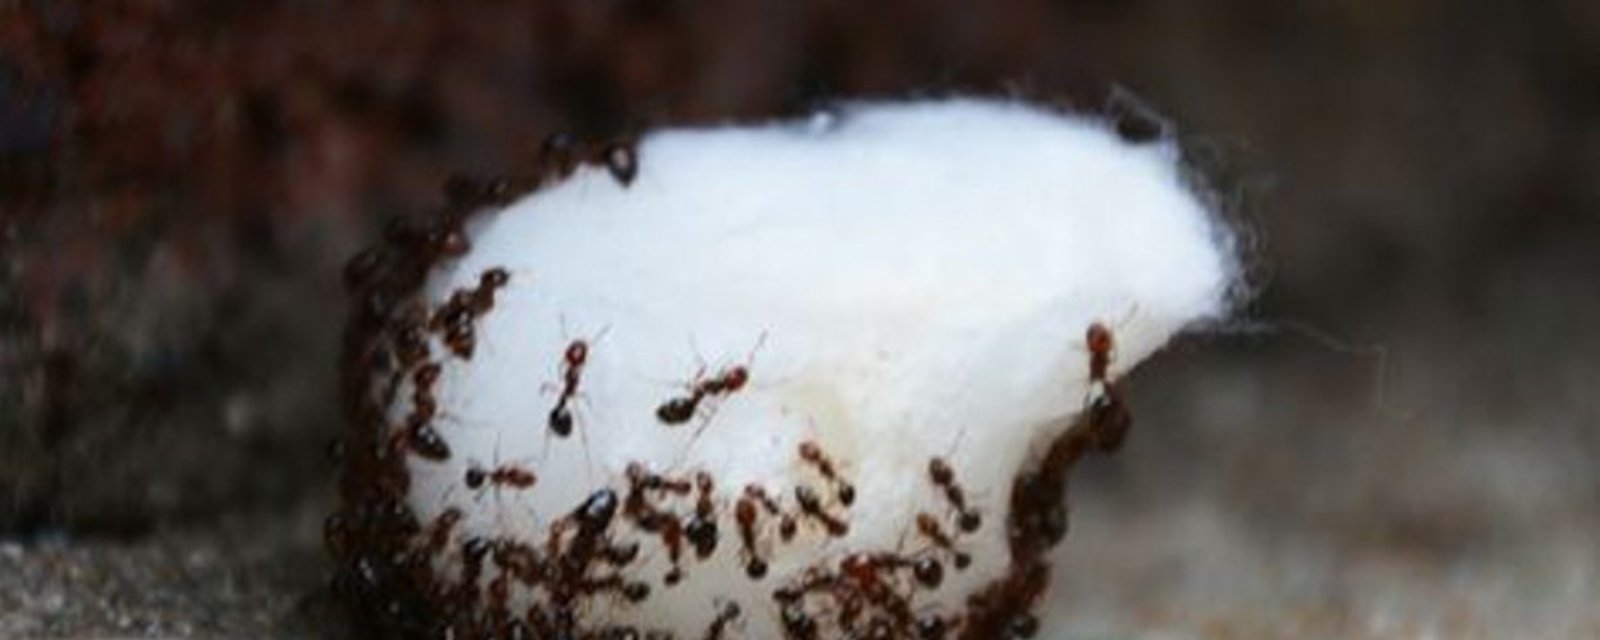 L’astuce facile pour repousser les fourmis de la maison